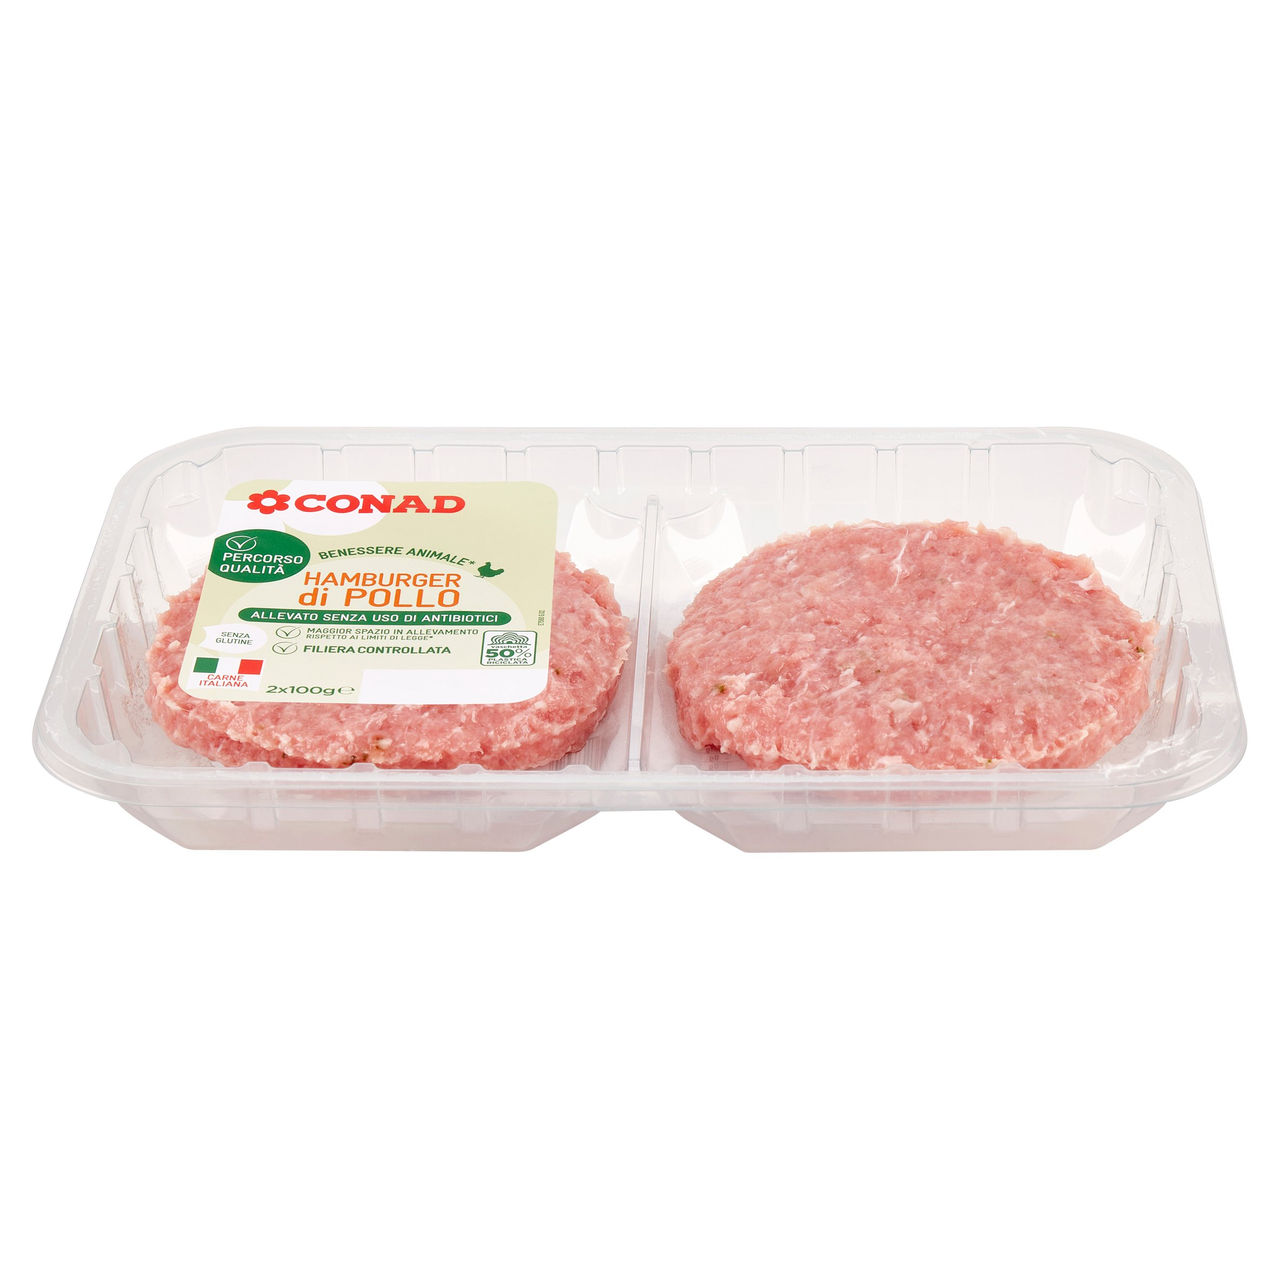 CONAD Percorso Qualità Allevato Senza Uso di Antibiotici Hamburger di Pollo 2 x 100 g